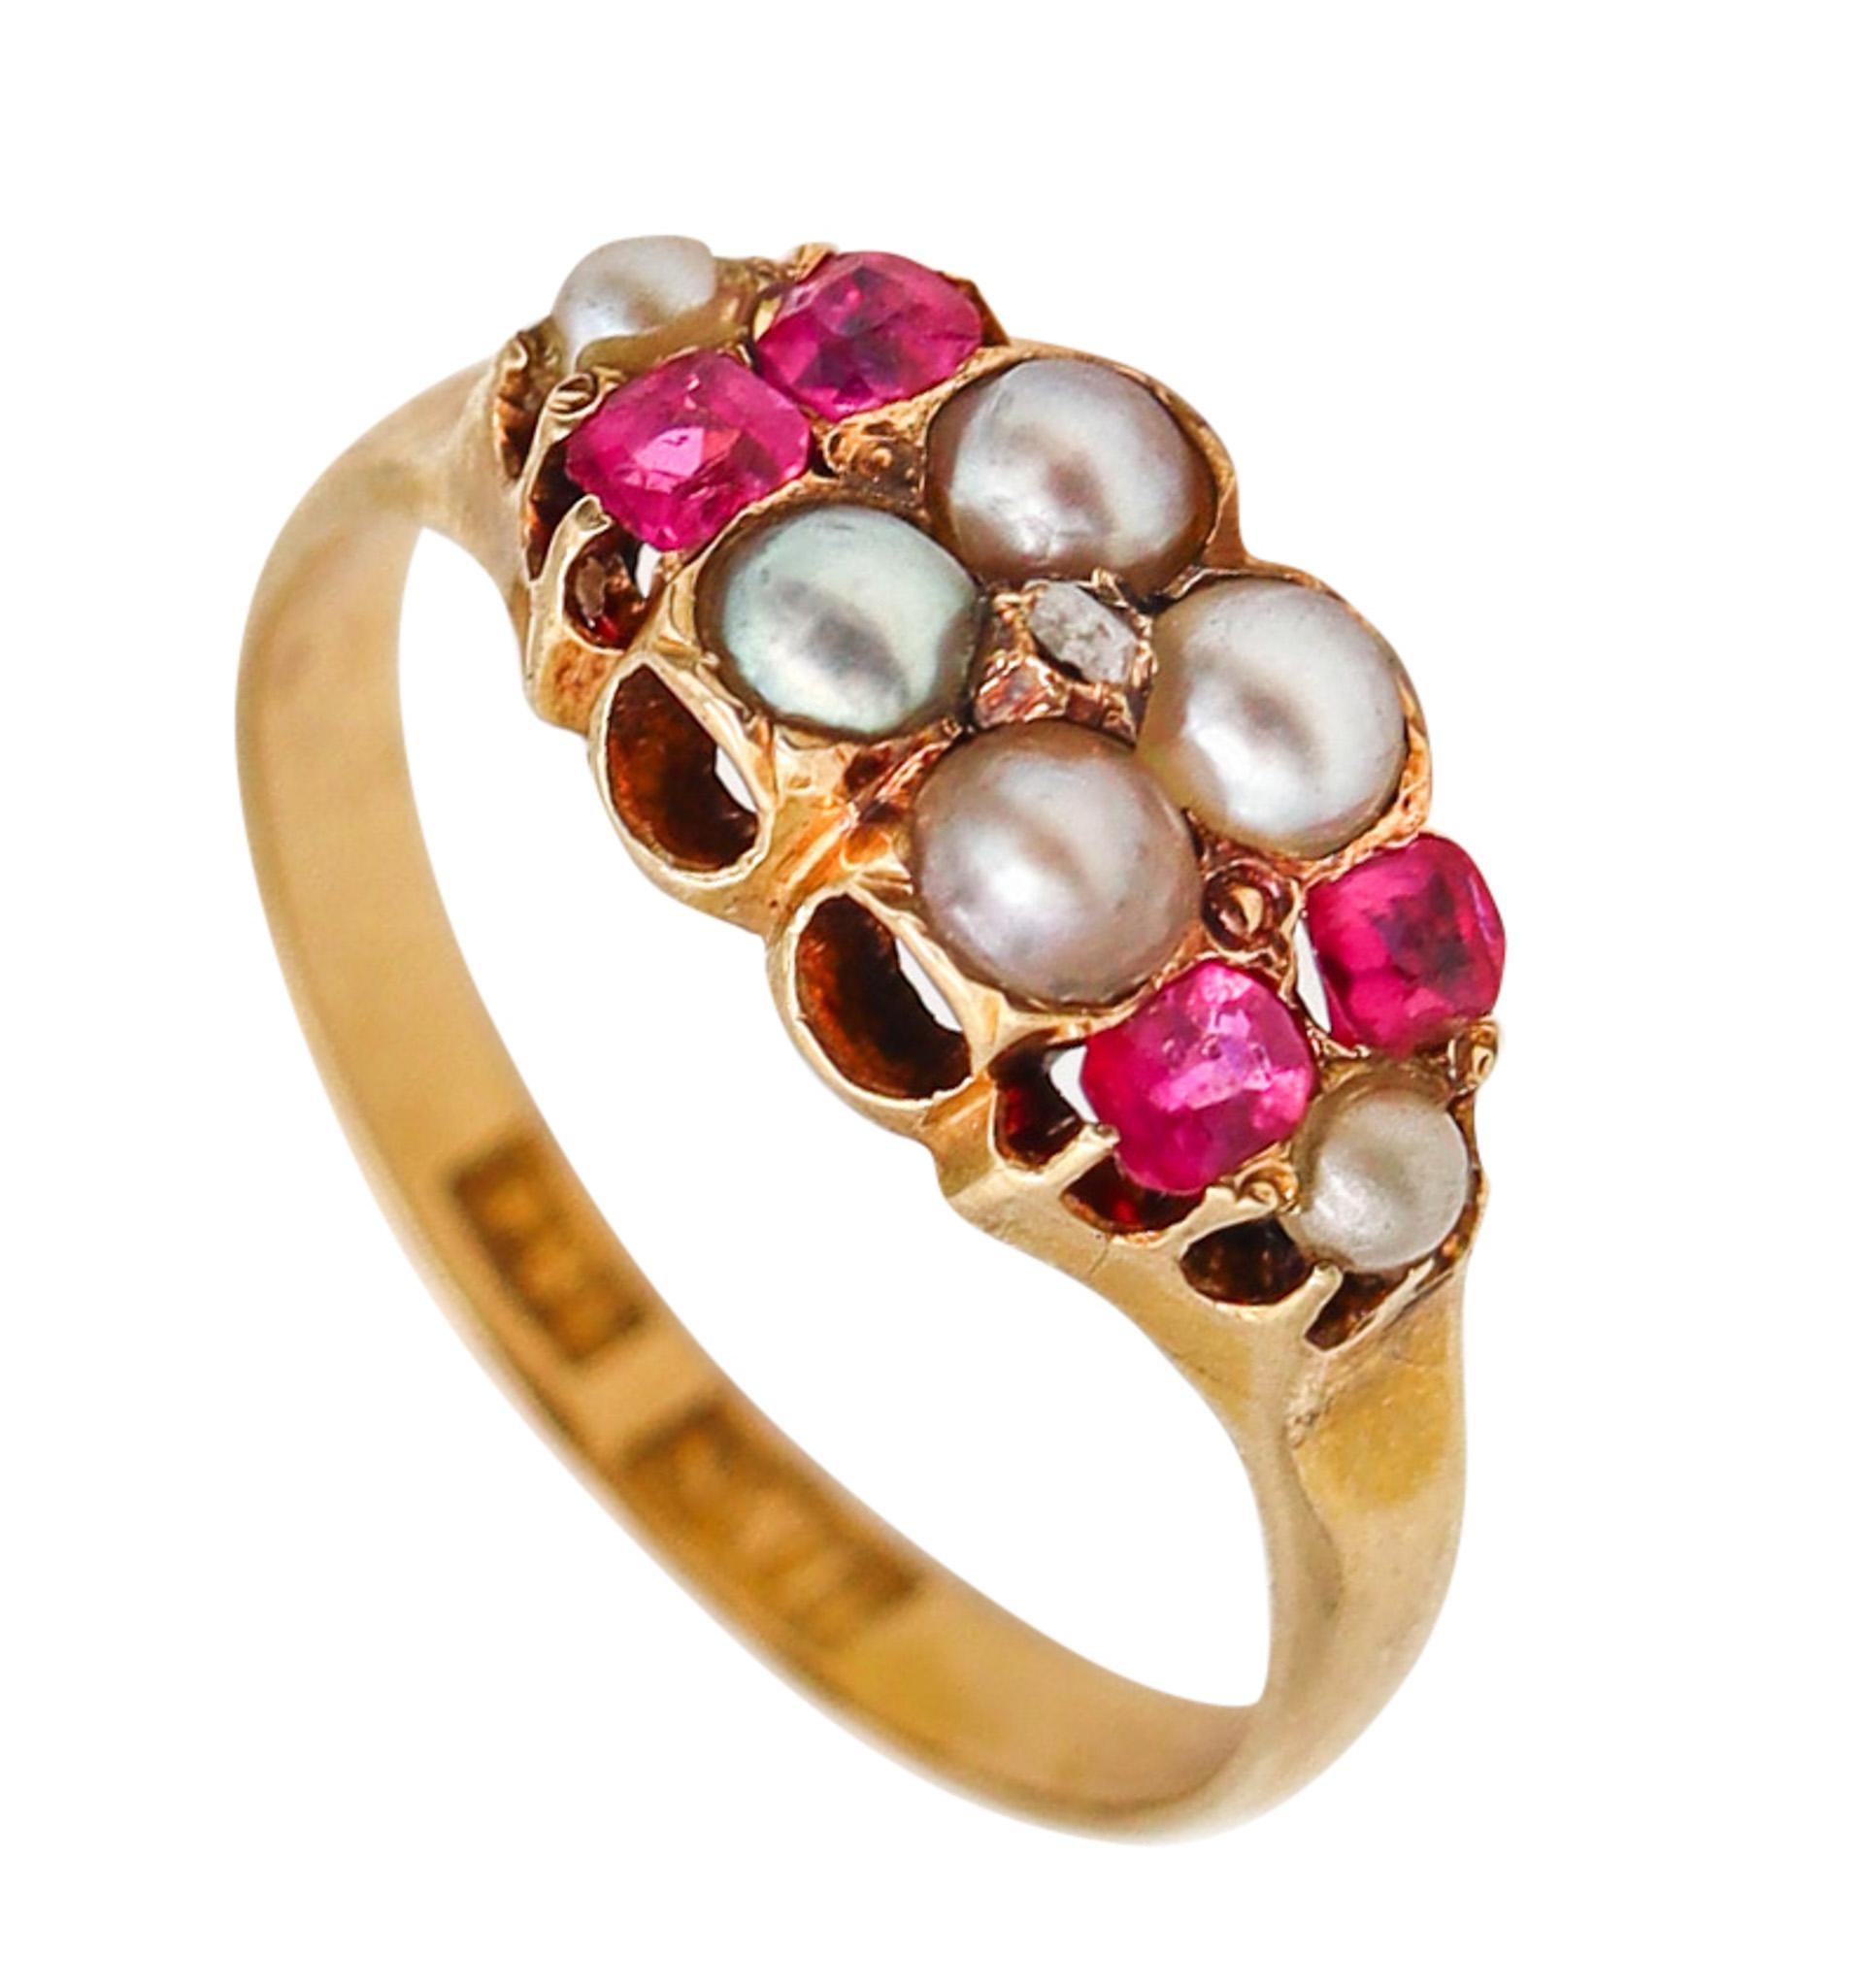 Viktorianischer Ring von 1880 aus 18 Karat Gelbgold mit Rubinen und runden weißen Perlen